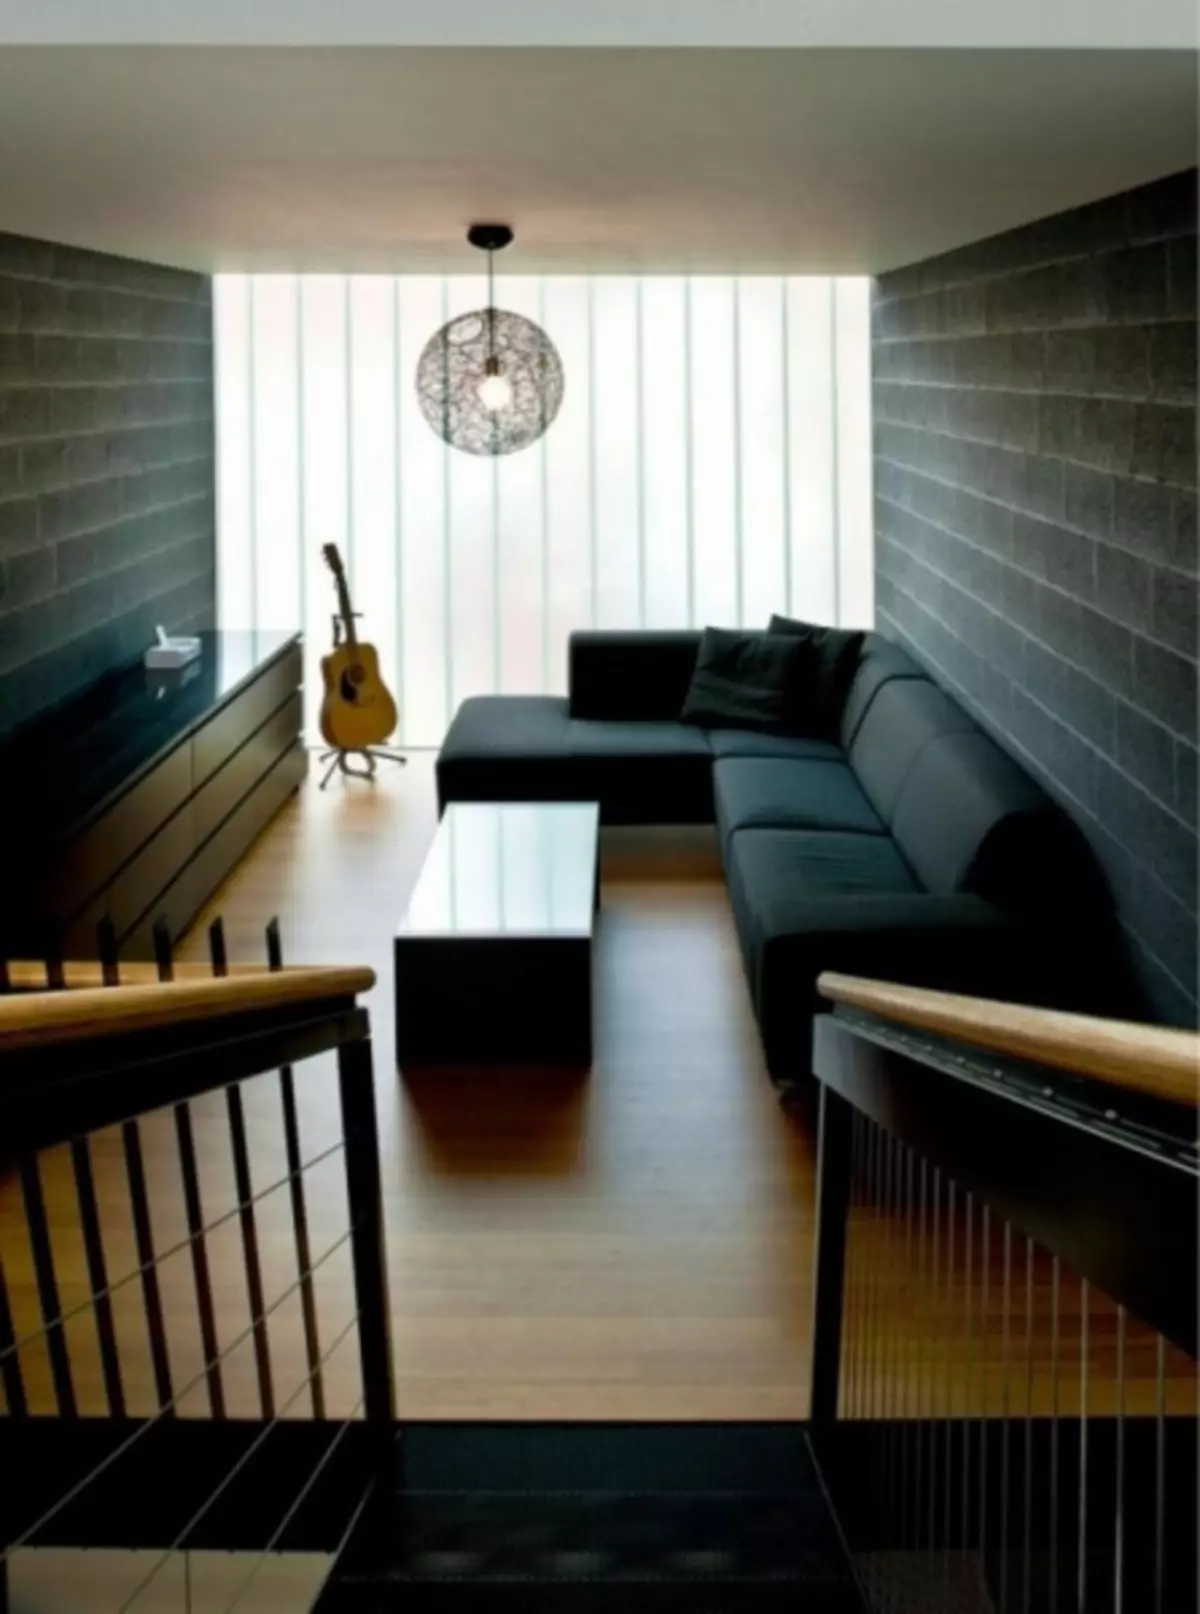 Kamar tamu hideung - 115 poto ideu pangsaéna dina interior ruangan tamu monochrome